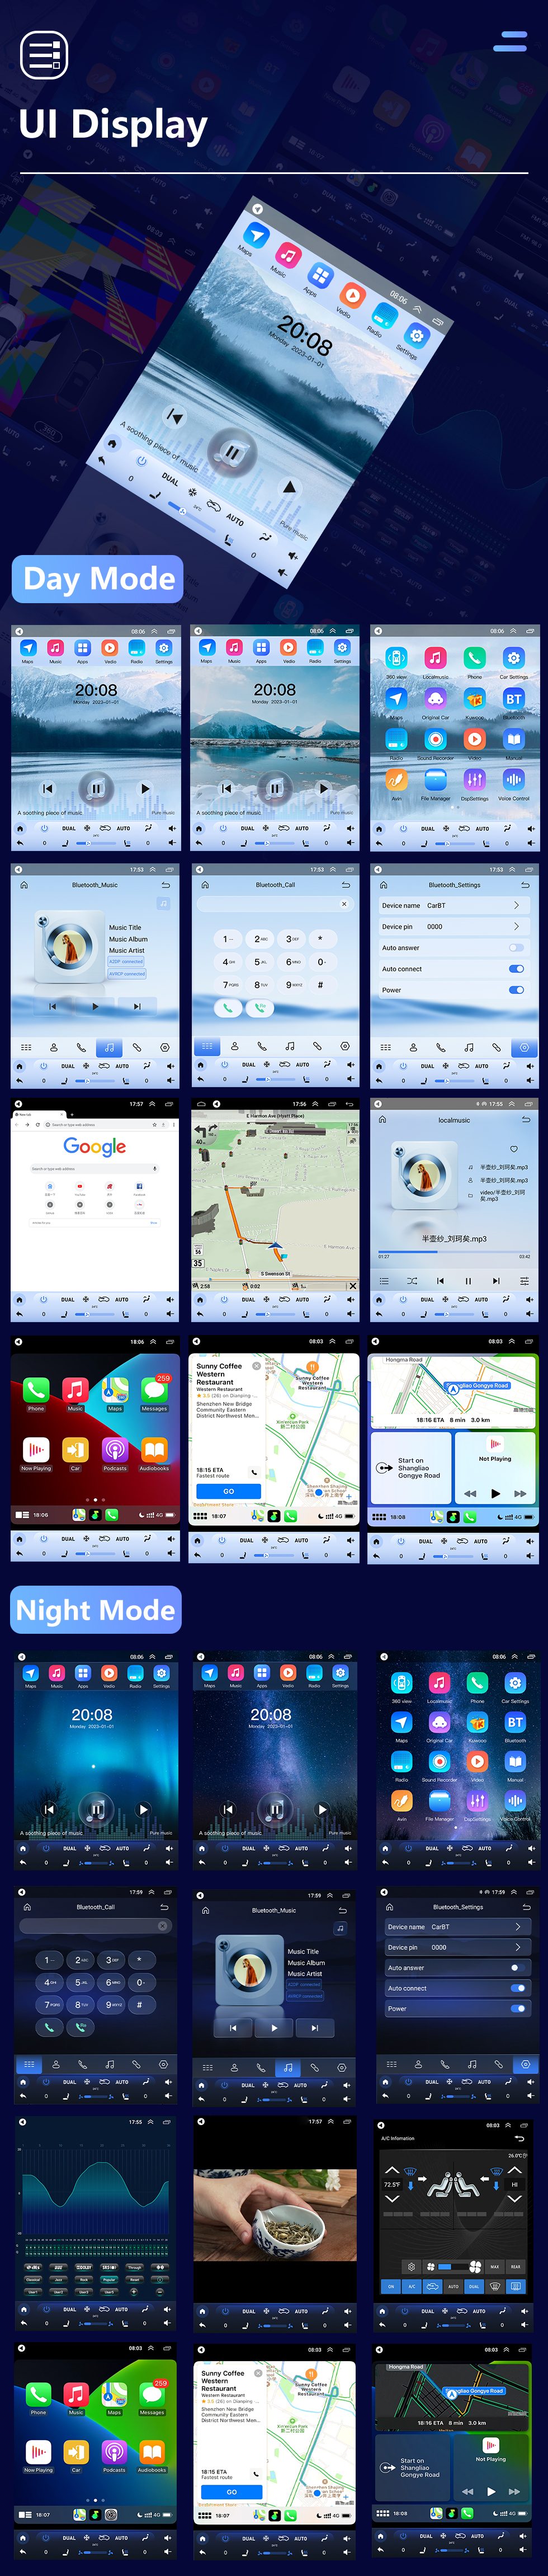 Seicane Radio de navegación GPS con pantalla táctil Android 10.0 HD de 12.1 pulgadas para Ford Mondeo Fusion MK5 2013-2018 con Bluetooth Carplay compatible con cámara TPMS AHD